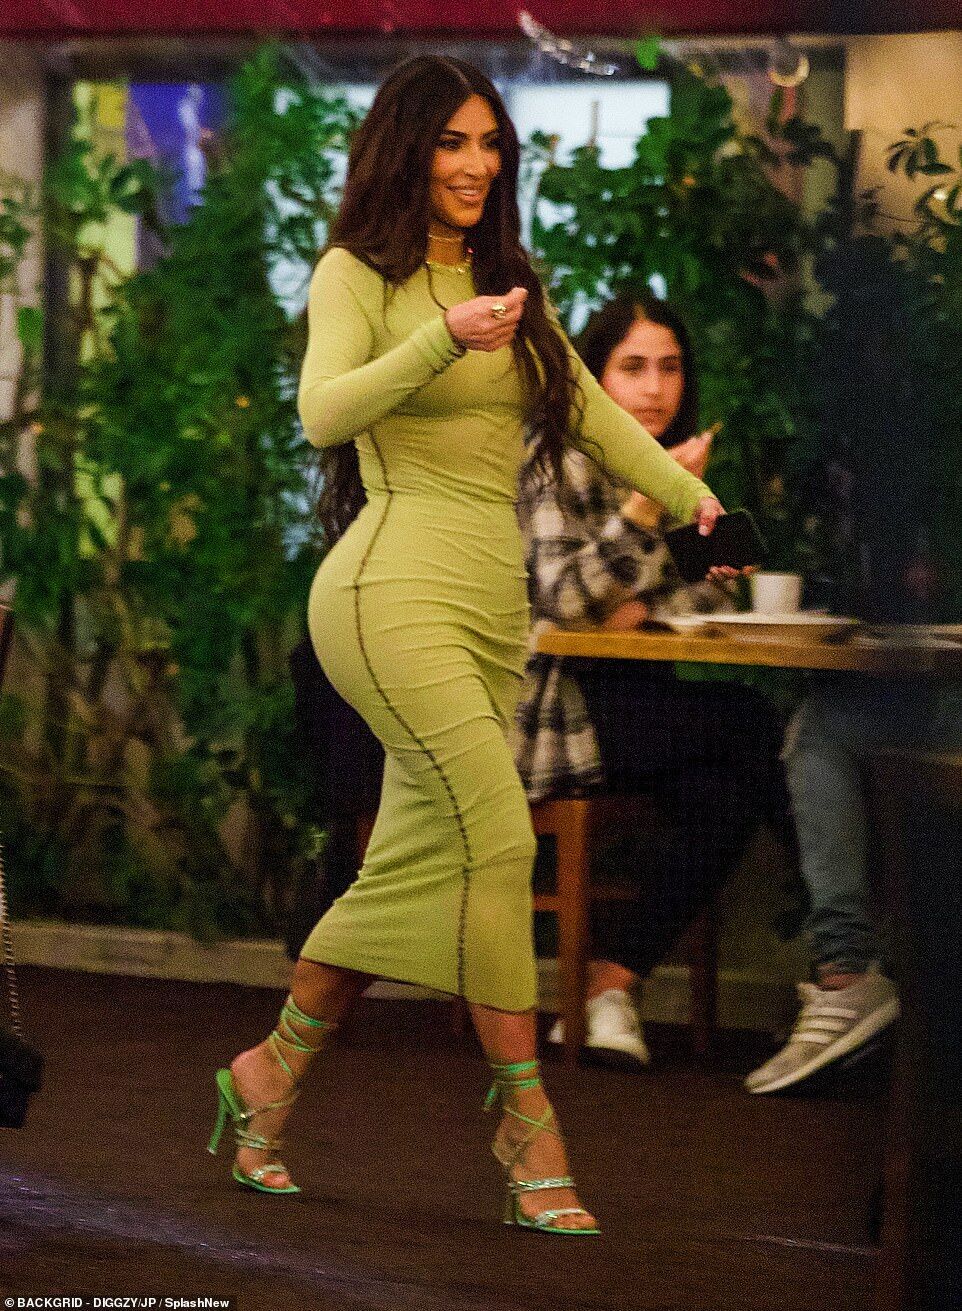 Ким Кардашьян в салатовом платье